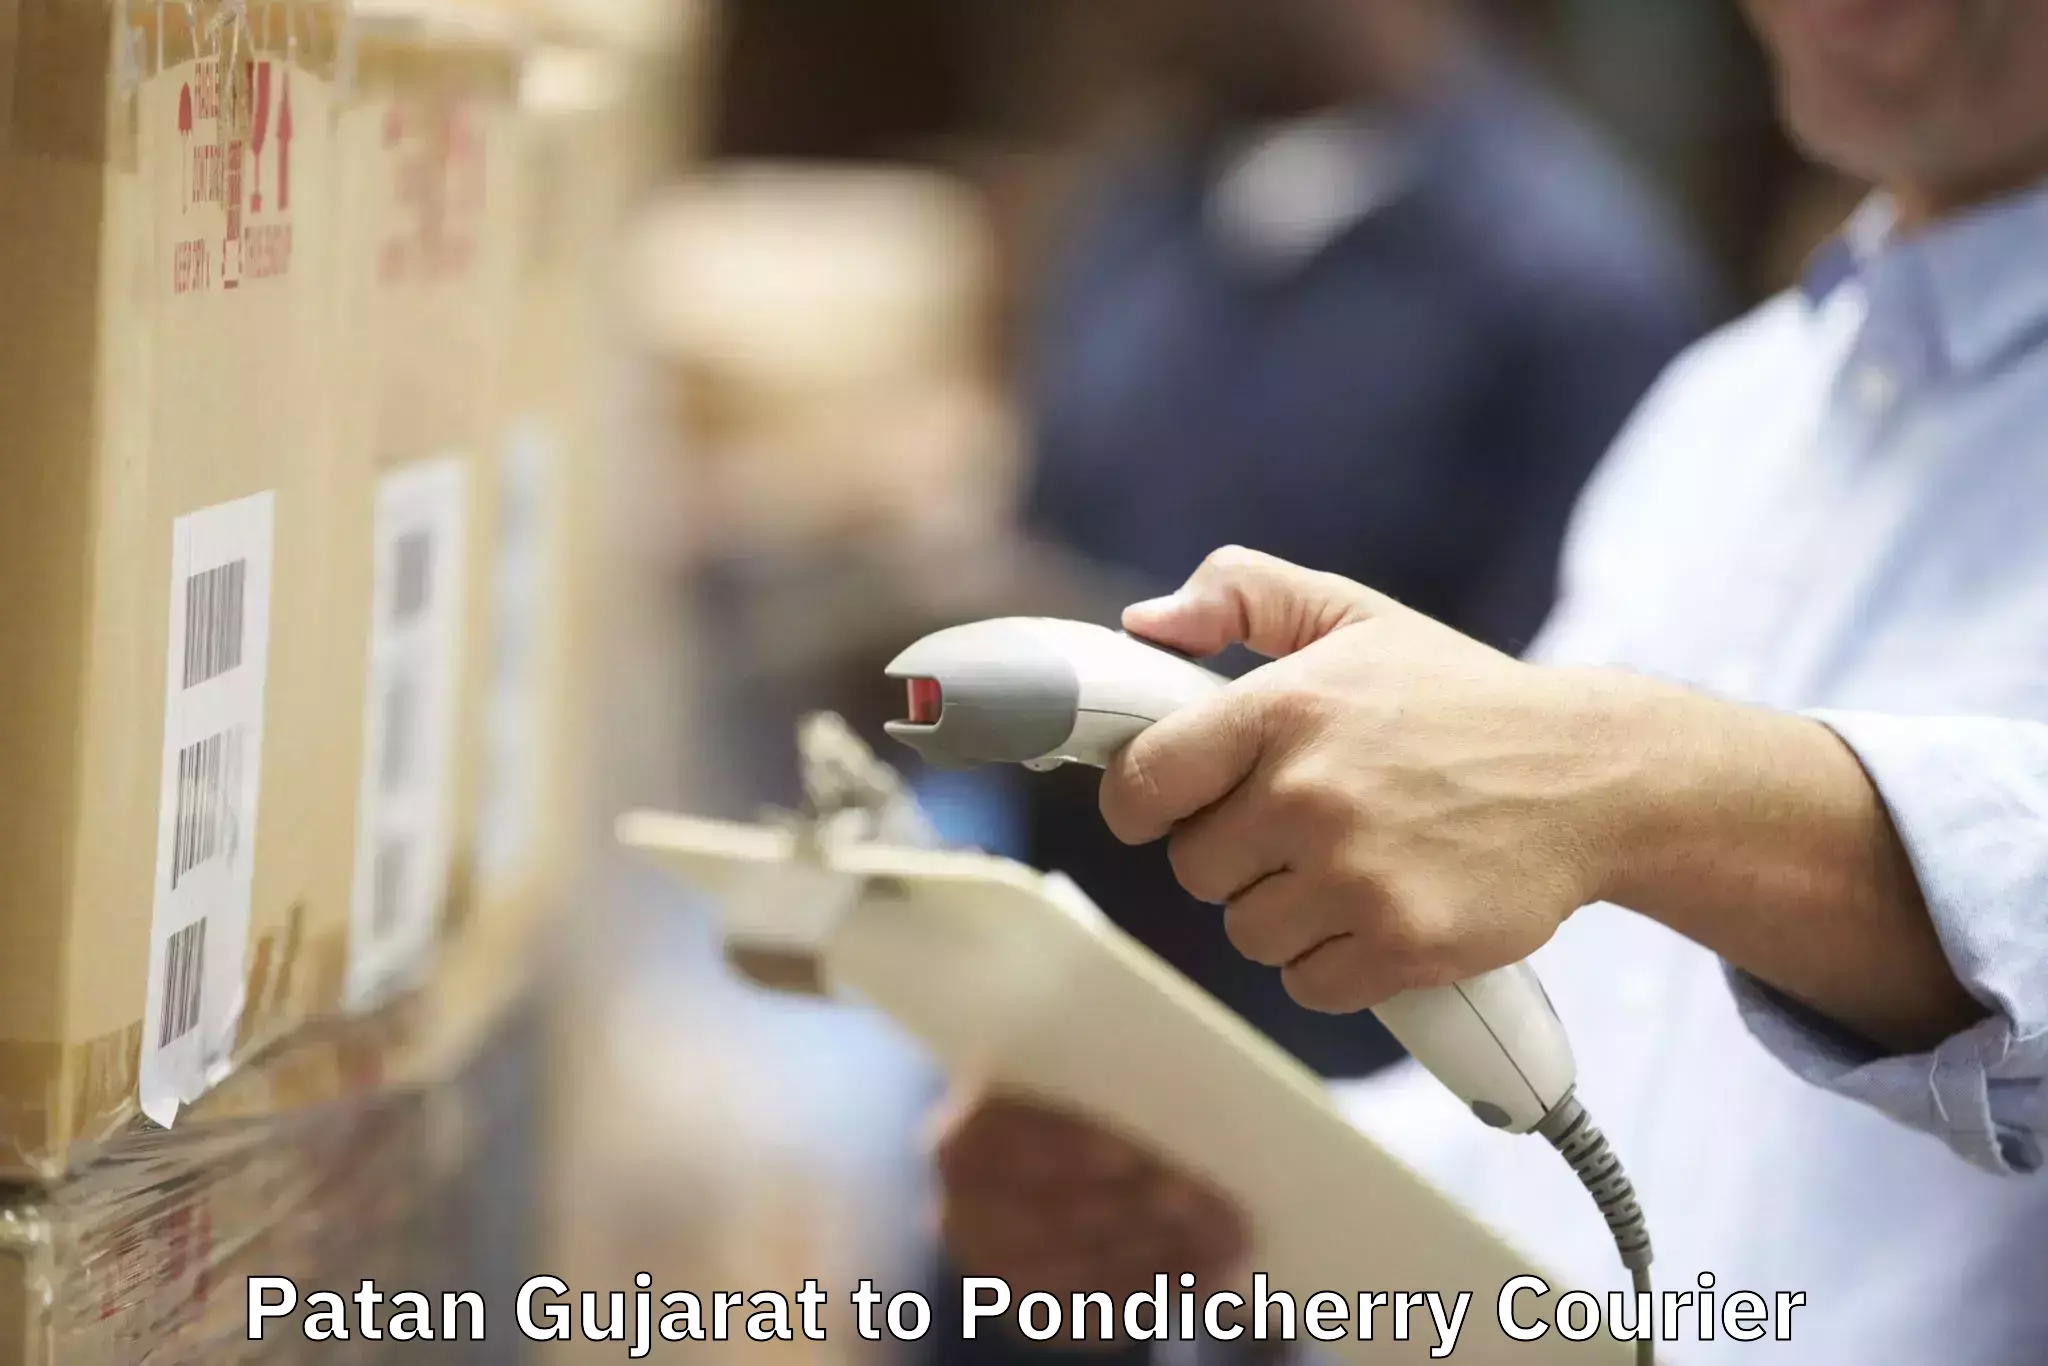 Furniture moving experts Patan Gujarat to Pondicherry